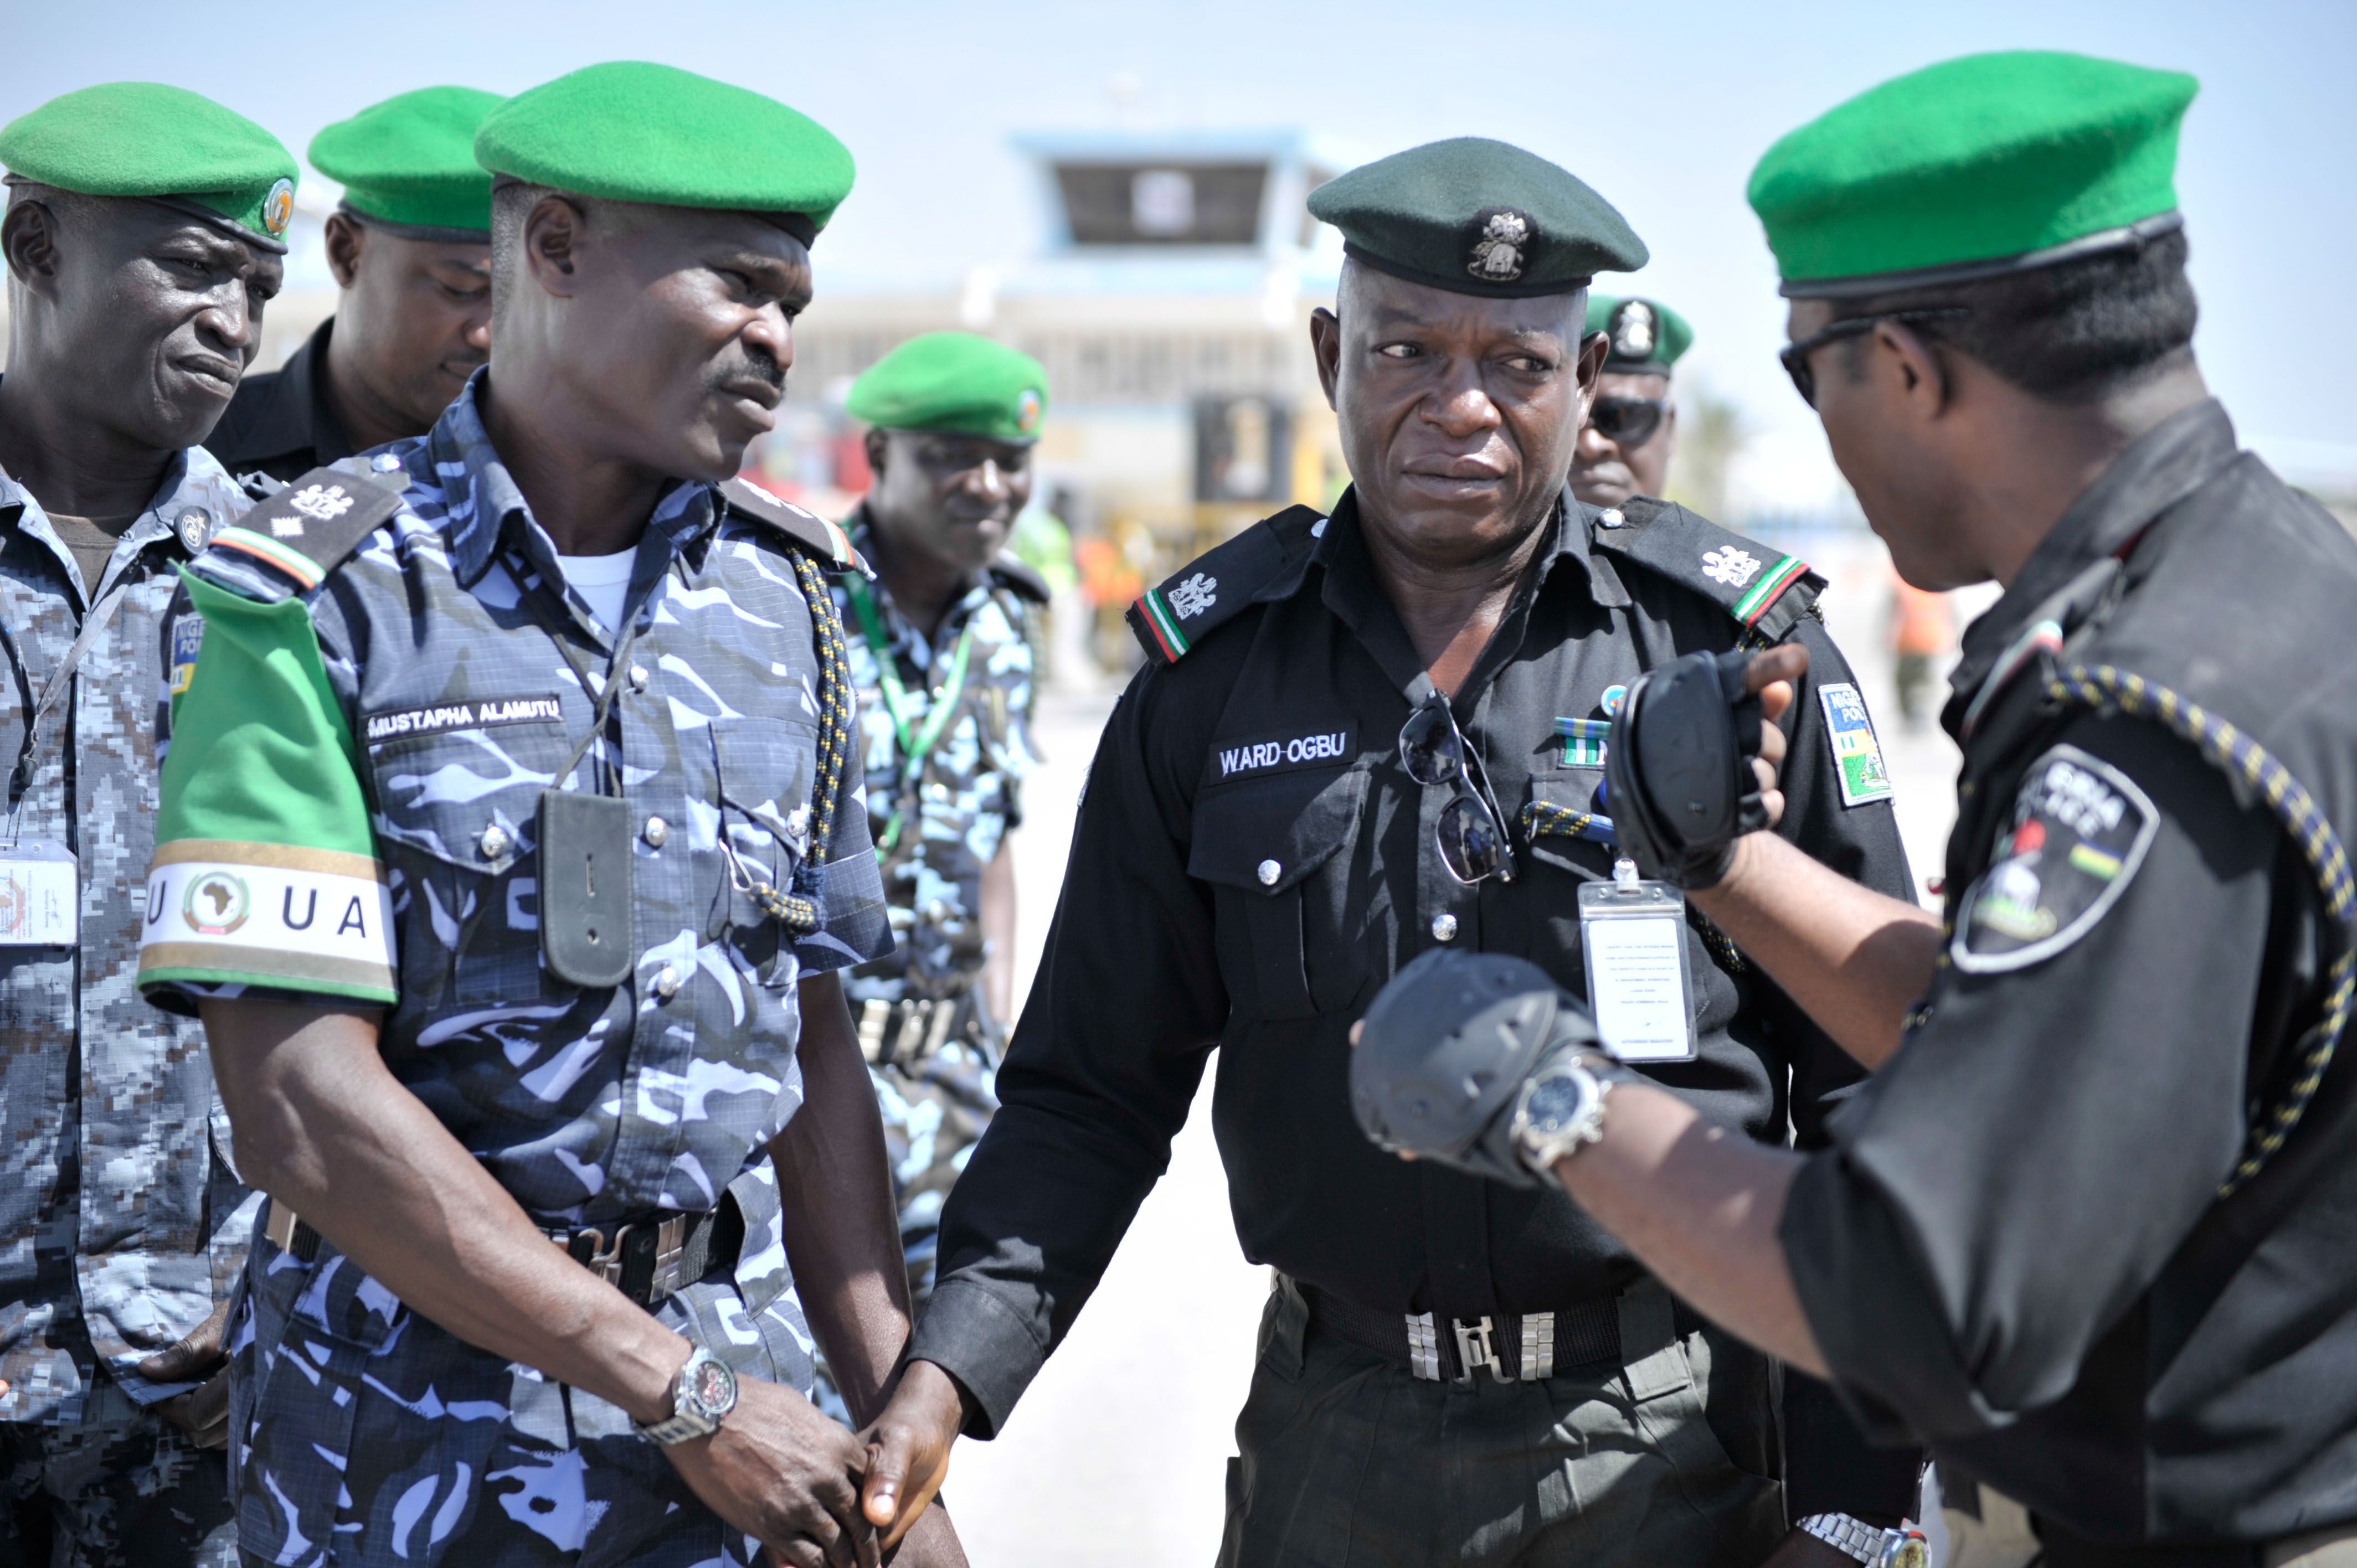 Policia Nigeria / Flickr